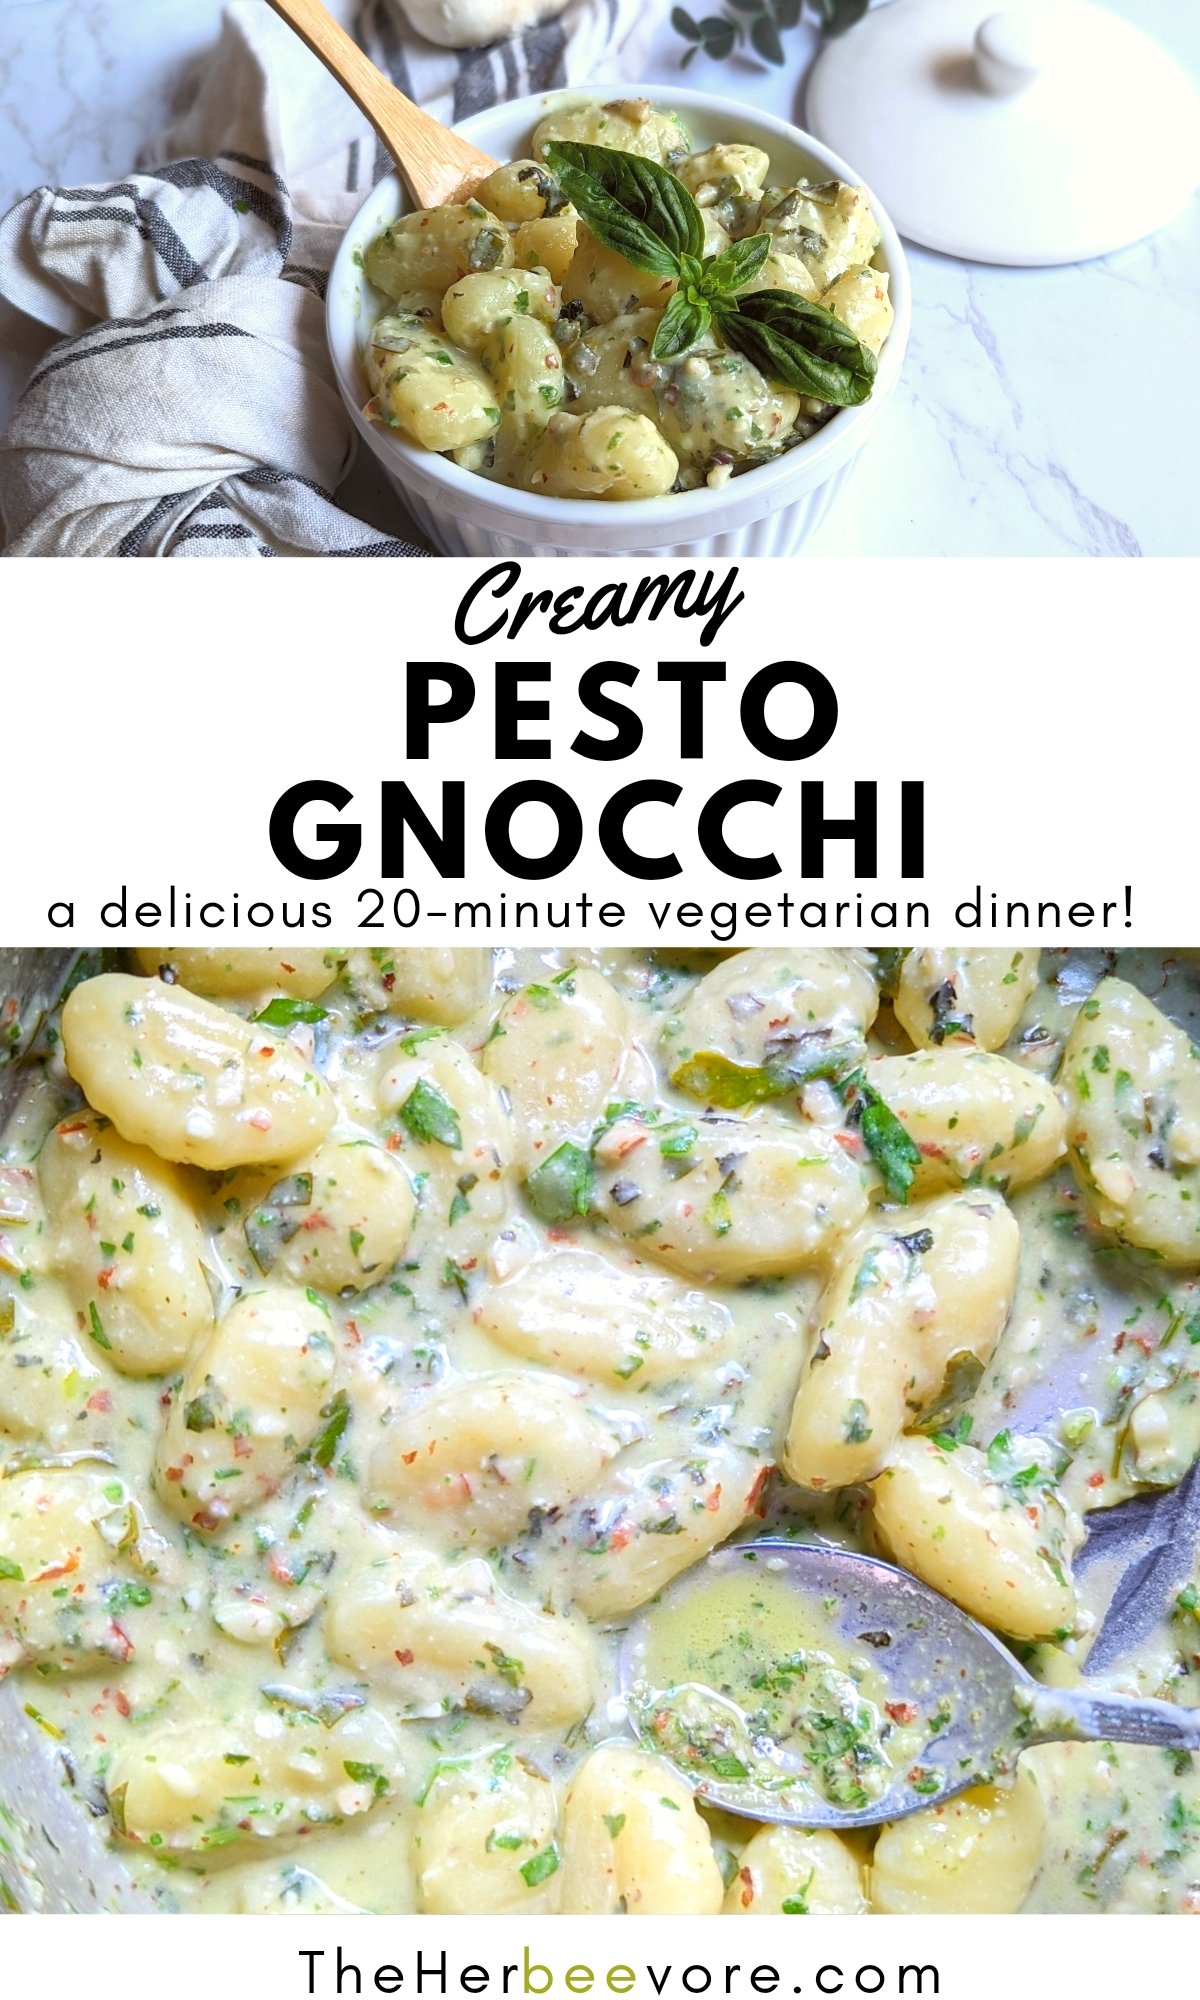 creamy pesto gnocchi recipe vegetarian meatless gnocchi recipe with creamy basil pesto sauce recipe 